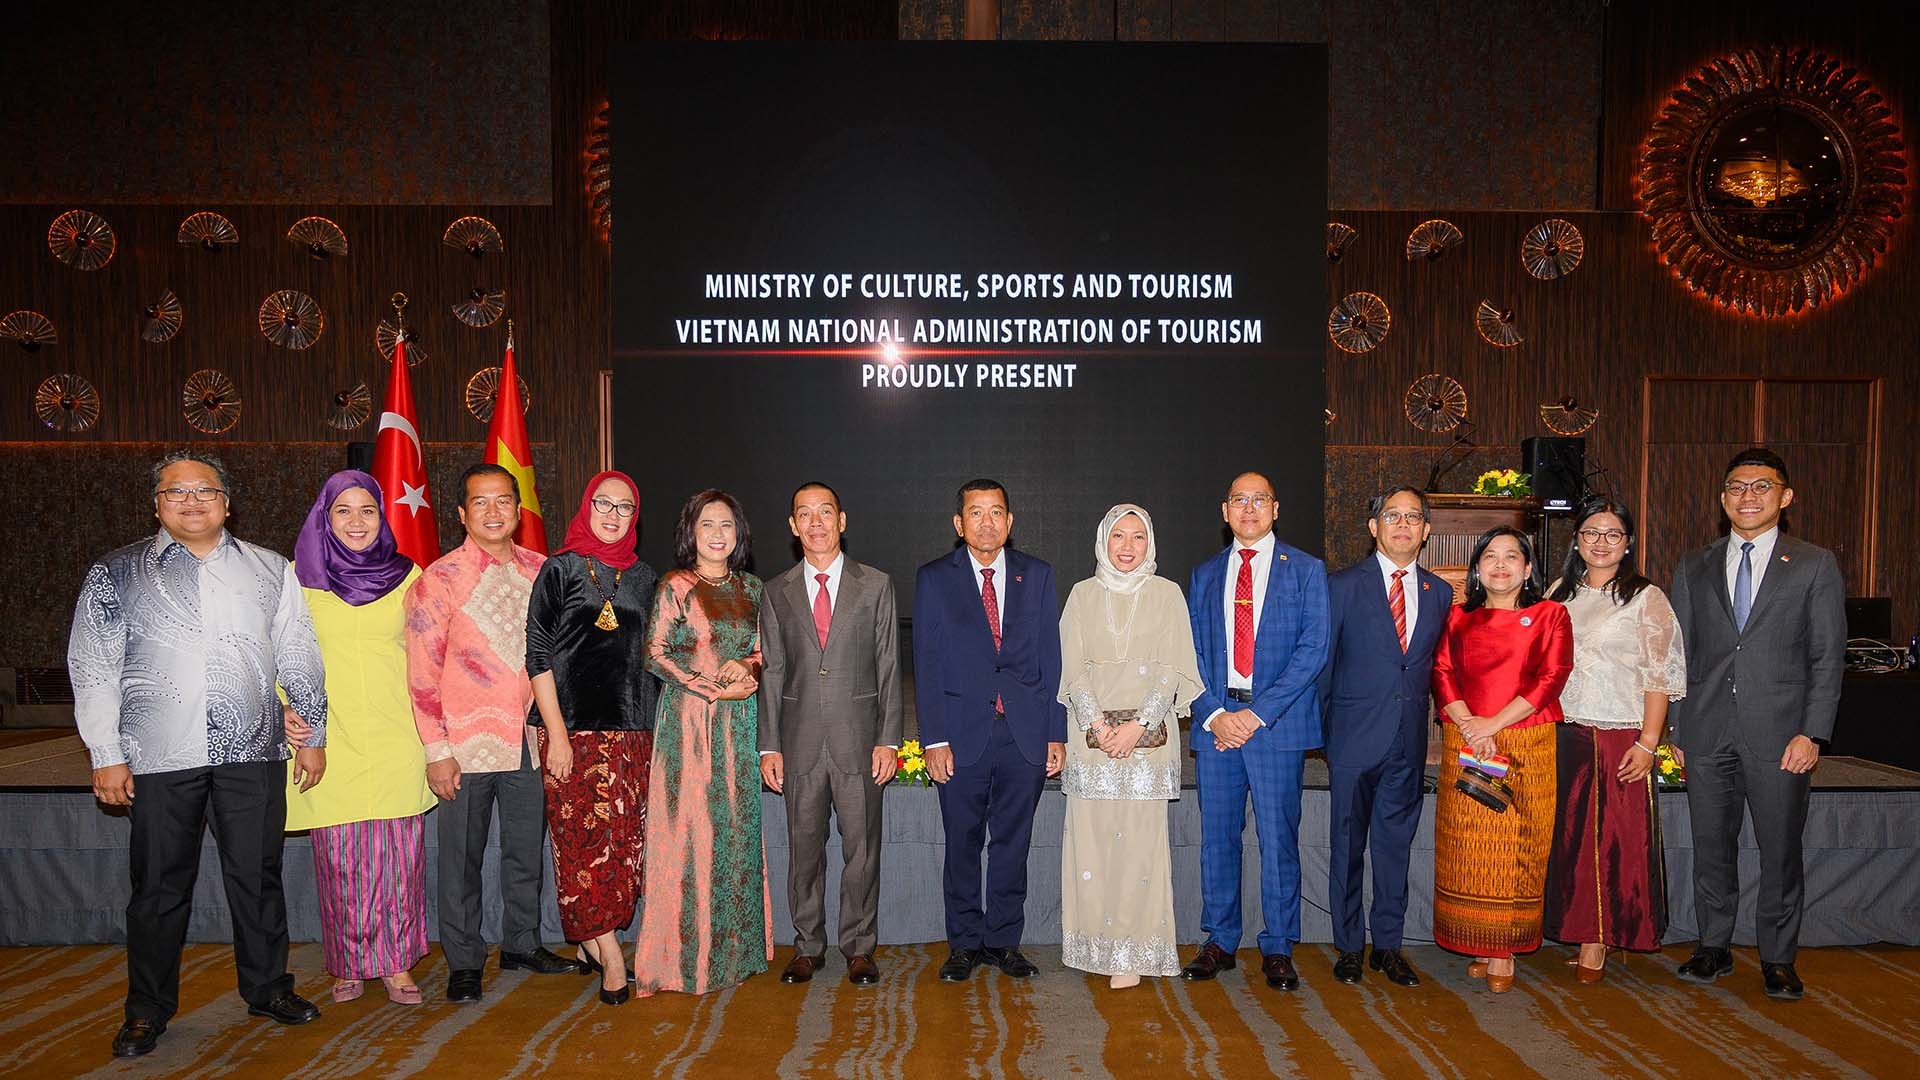 Đại sứ Đỗ Sơn Hải cùng Đại sứ/đại biện của các quốc gia ASEAN.